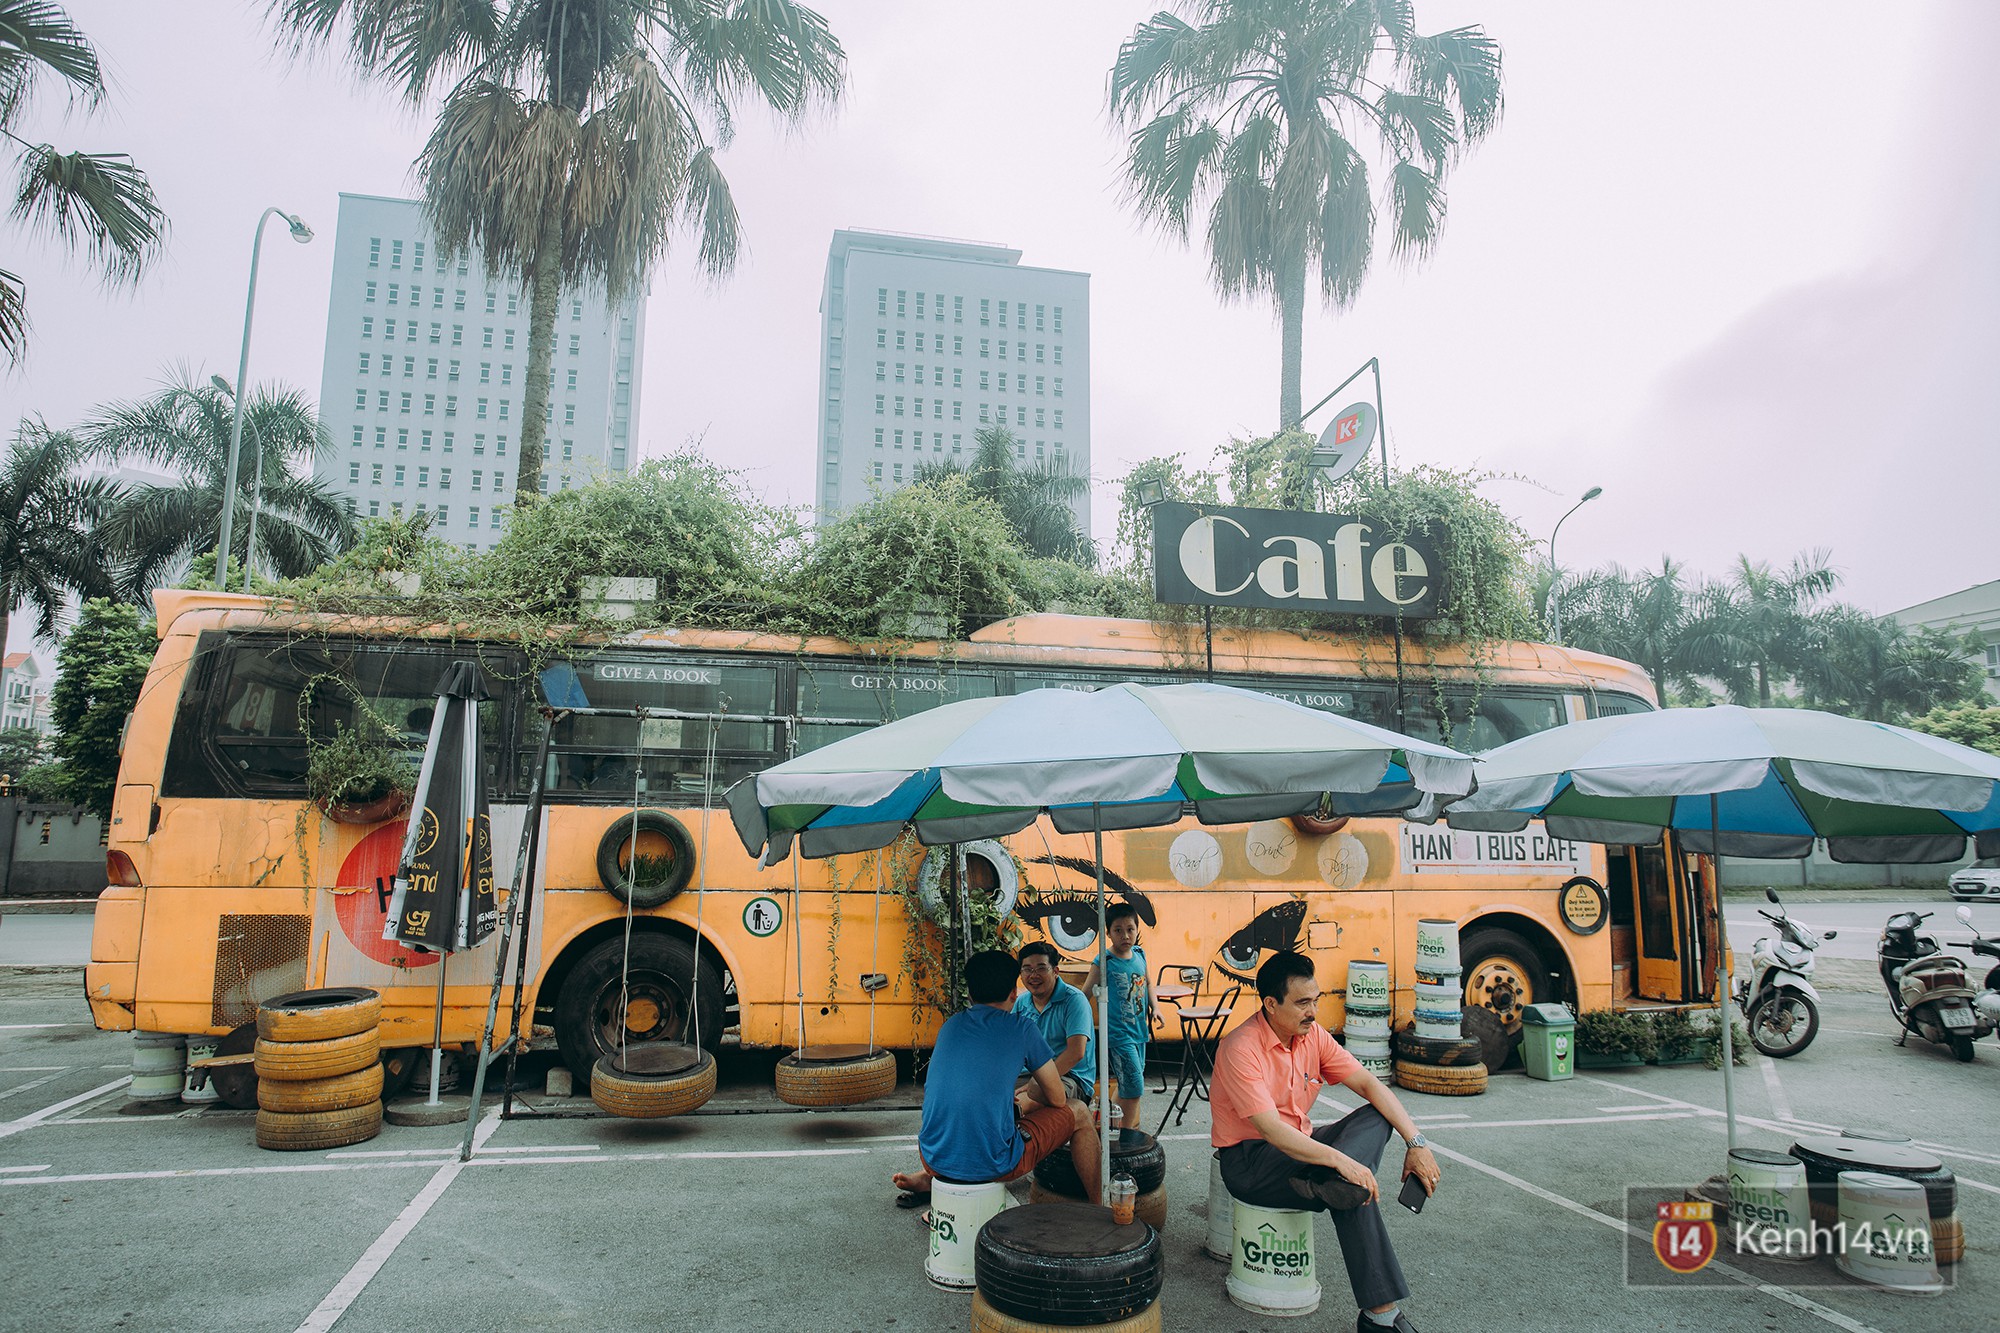 Phát hiện quán cà phê bus cực nhiều góc sống ảo ngay tại Hà Nội cho những ai còn băn khoăn cuối tuần không biết đi đâu - Ảnh 4.